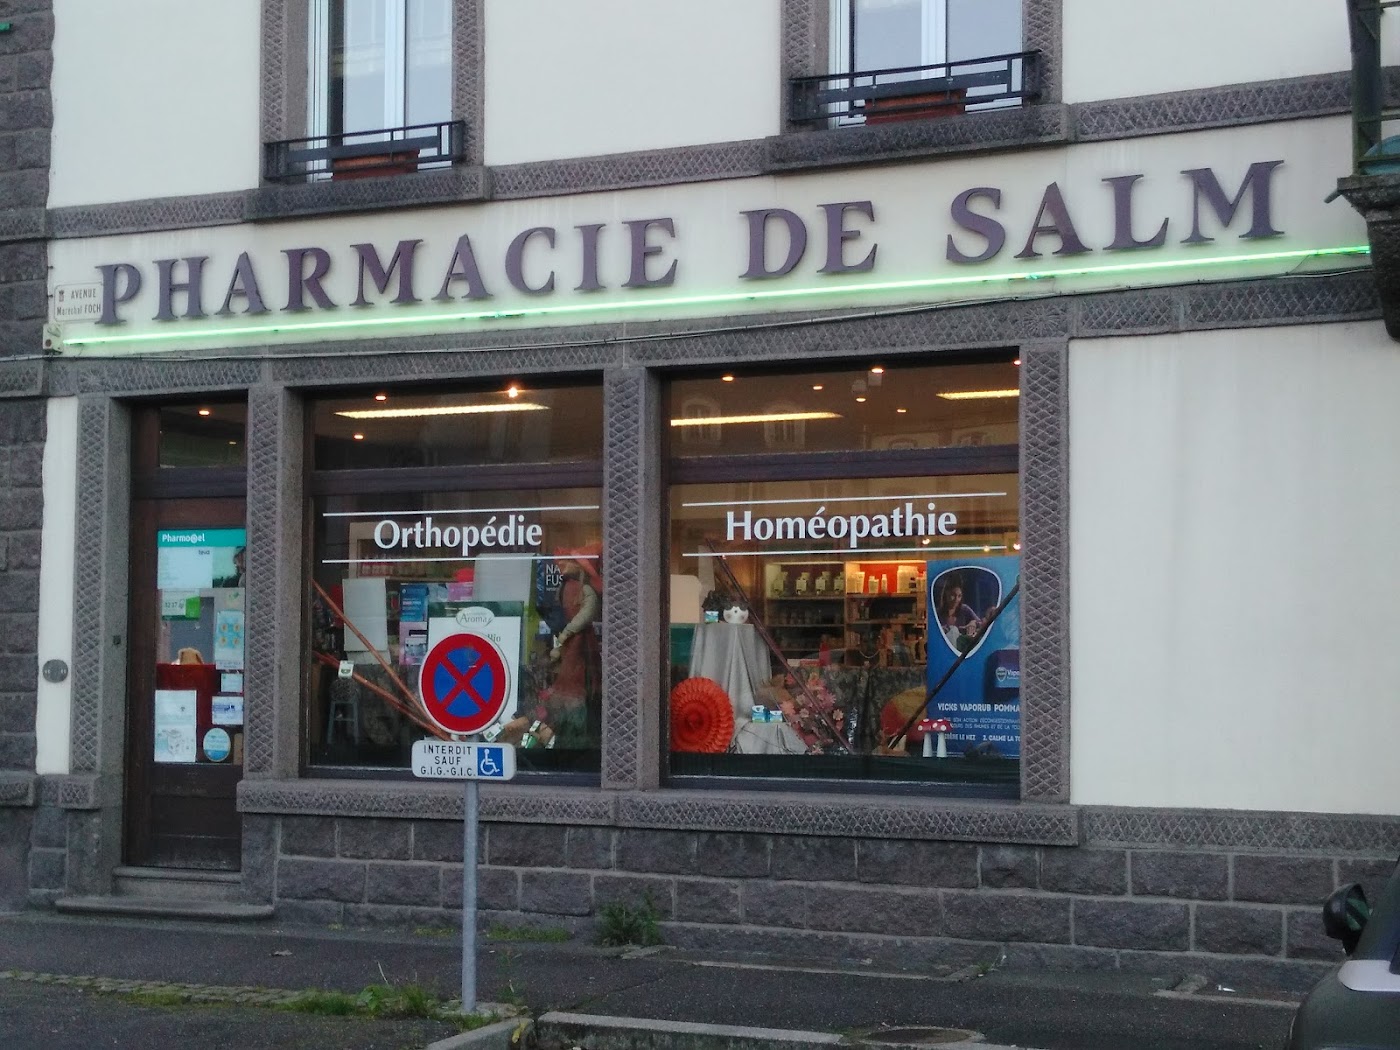 Pharmacie De Salm